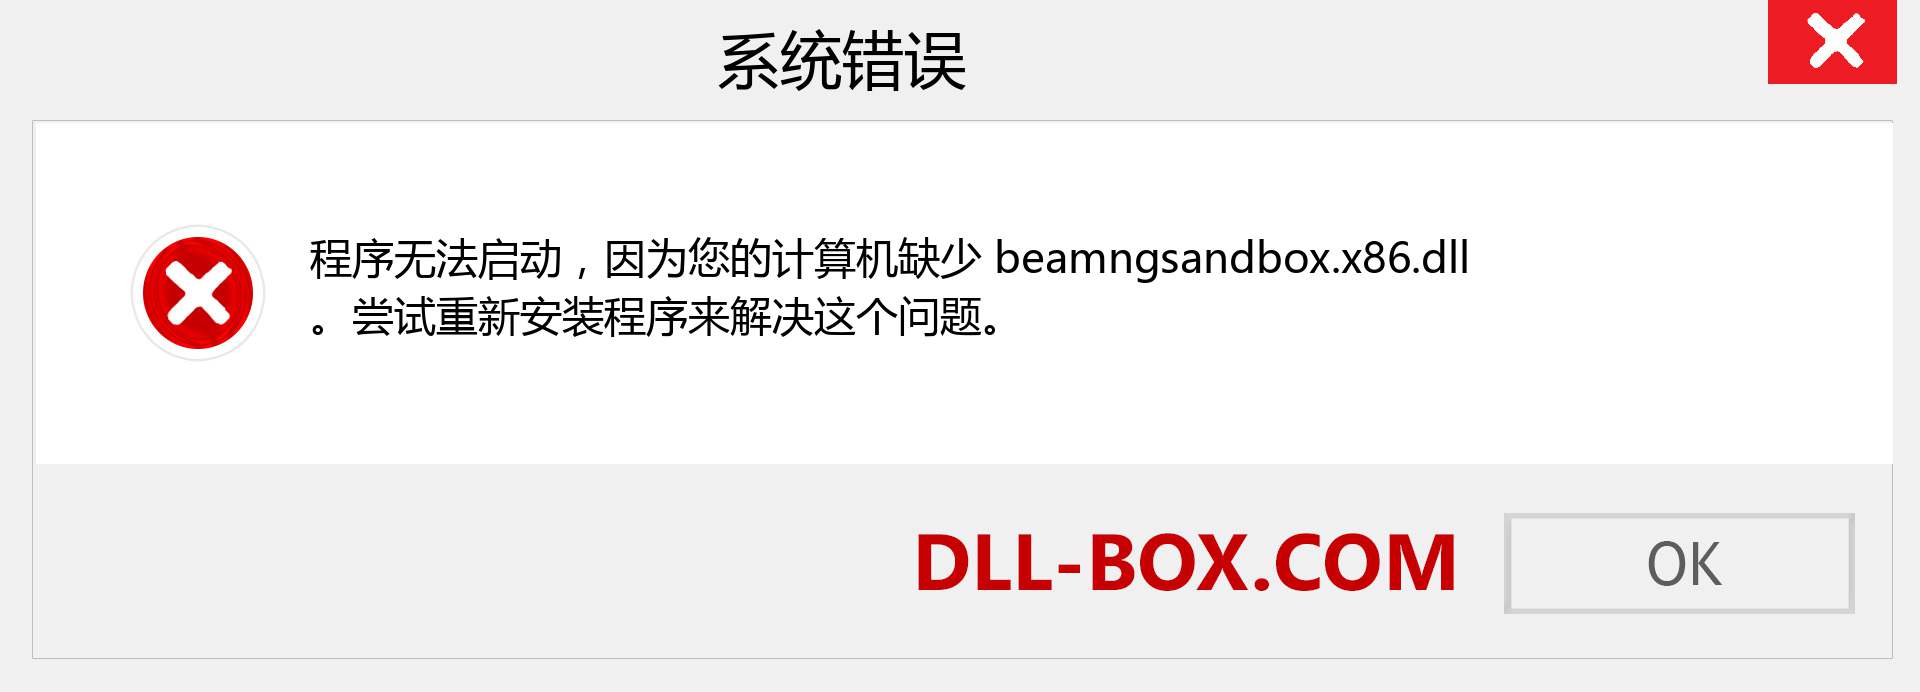 beamngsandbox.x86.dll 文件丢失？。 适用于 Windows 7、8、10 的下载 - 修复 Windows、照片、图像上的 beamngsandbox.x86 dll 丢失错误